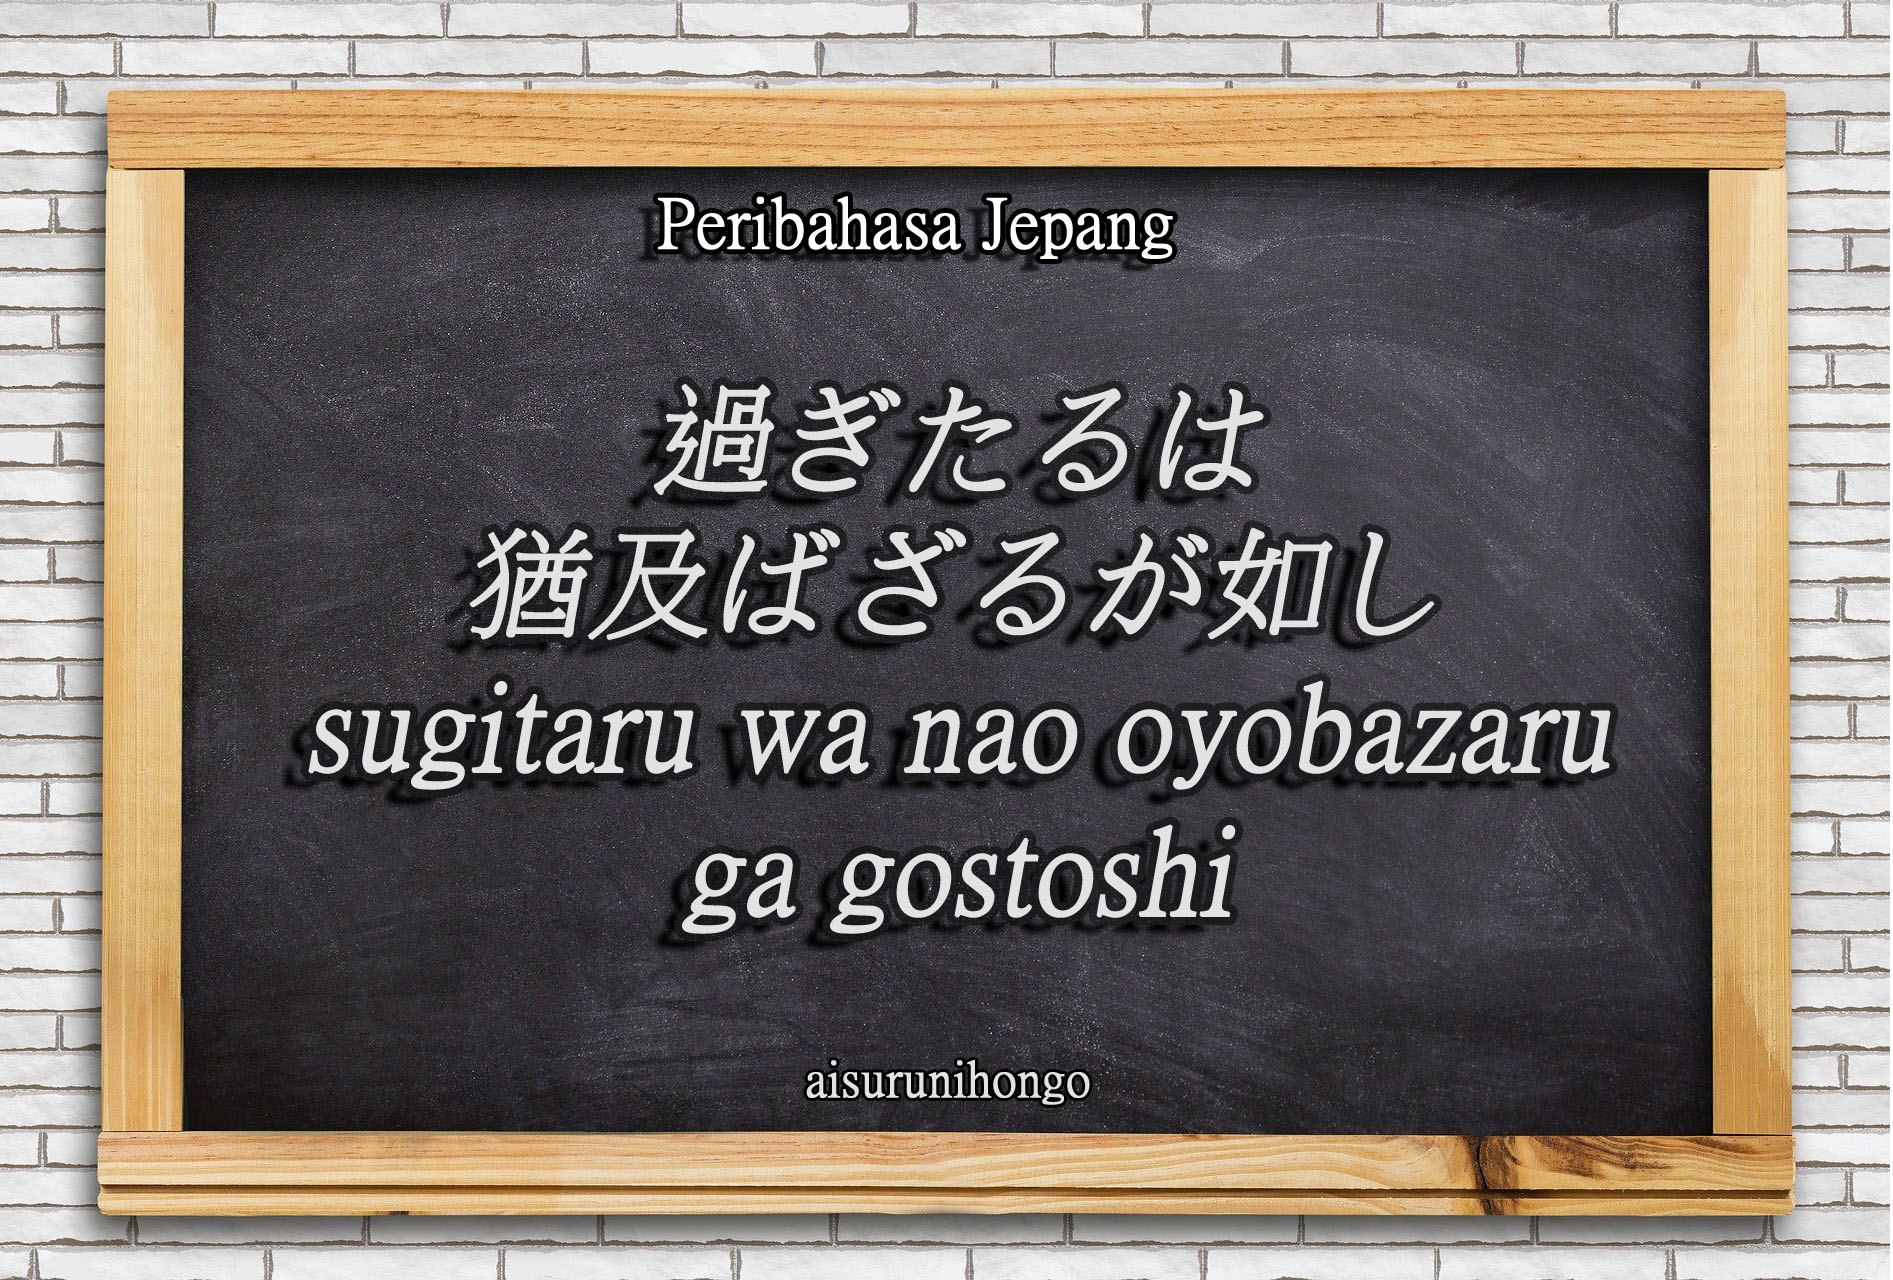 Peribahasa Jepang : Sugitaru wa Nao Oyobazaru Gotoshi